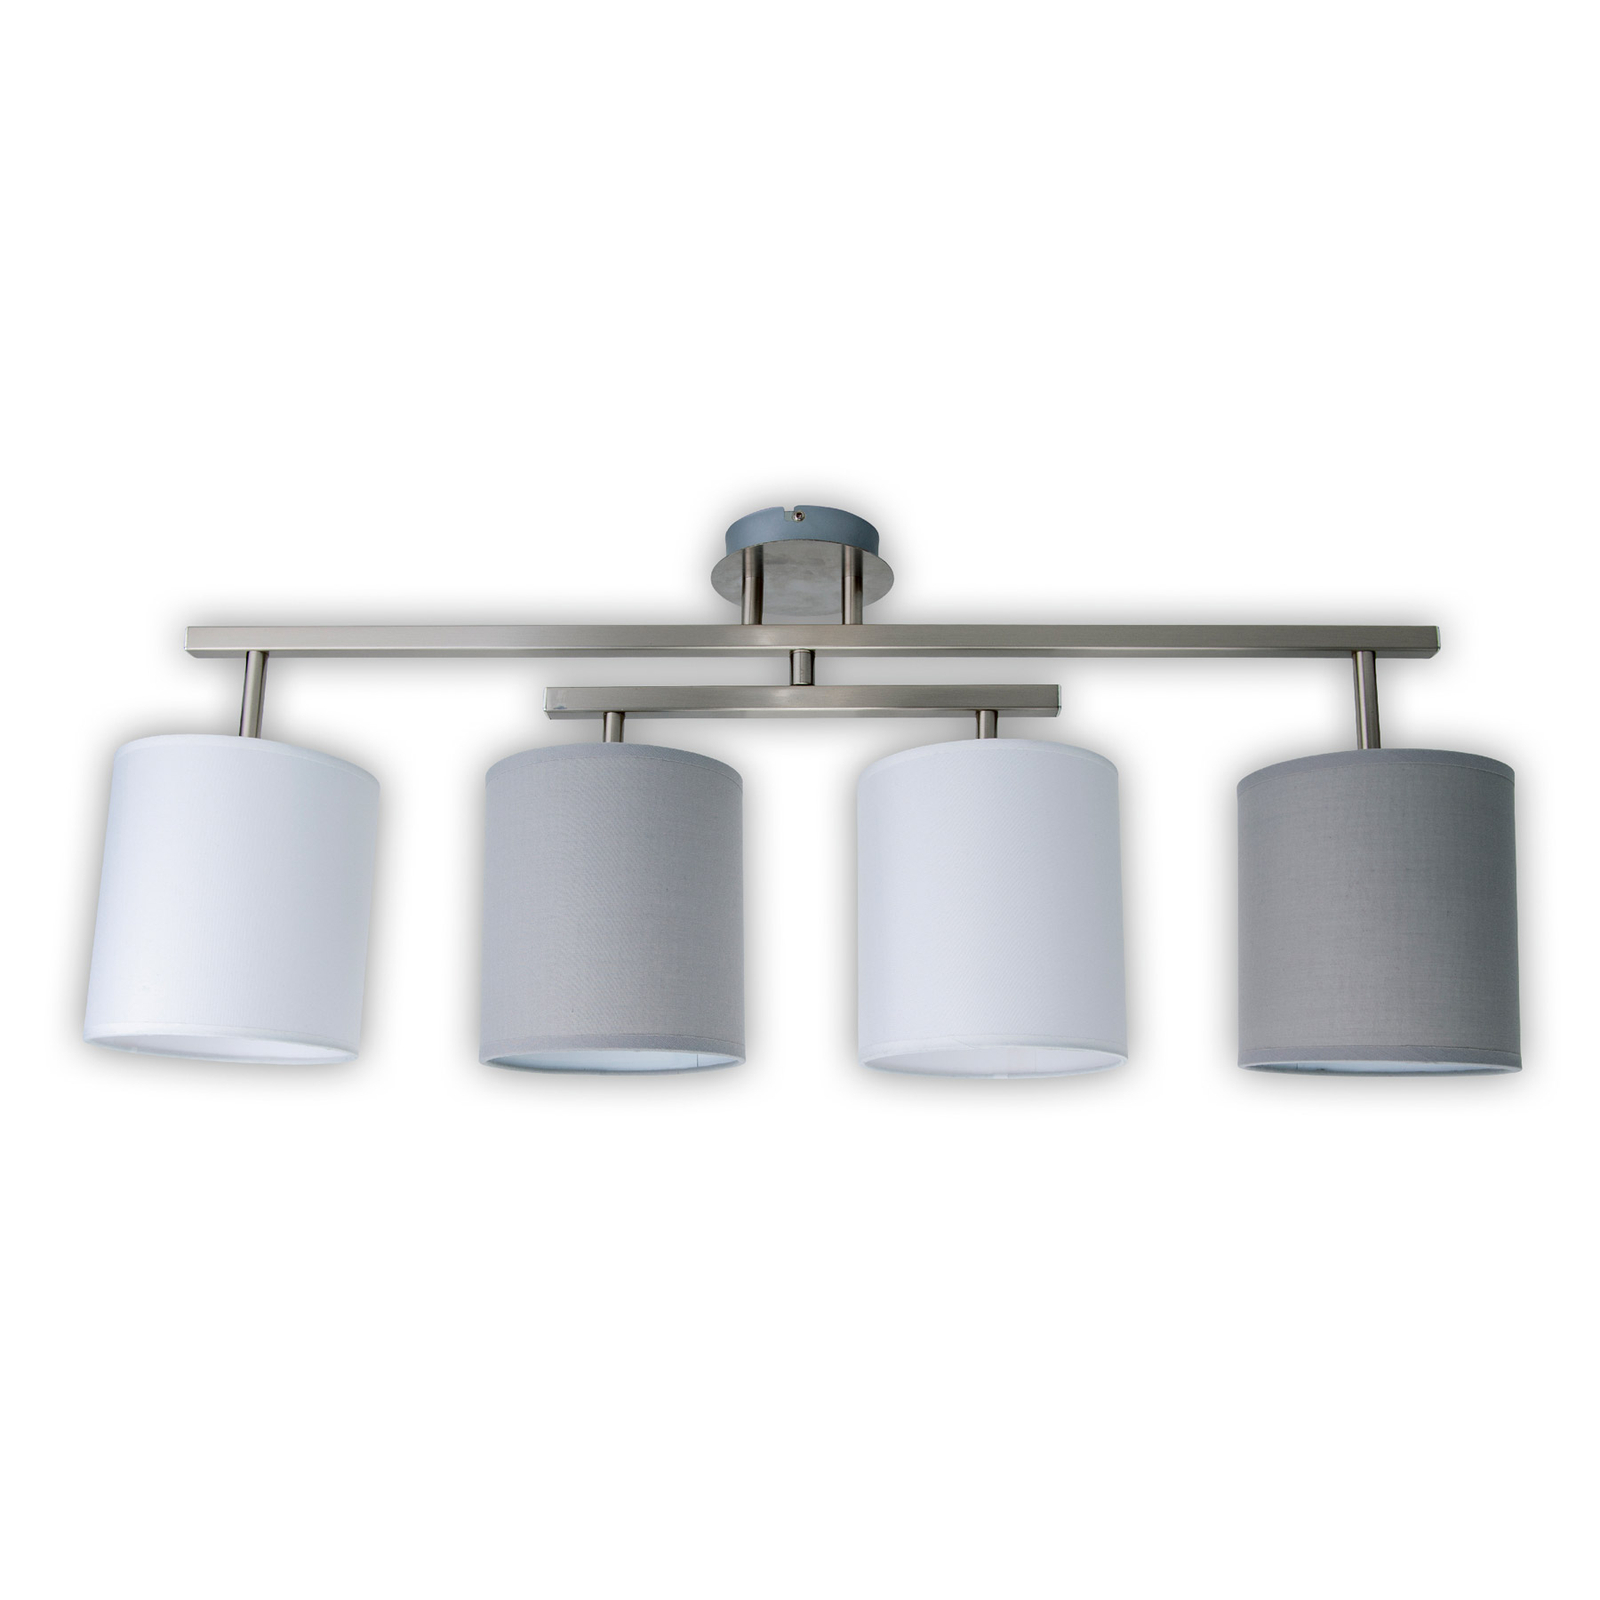 Tilde ceiling light 4-bulb, grey/white